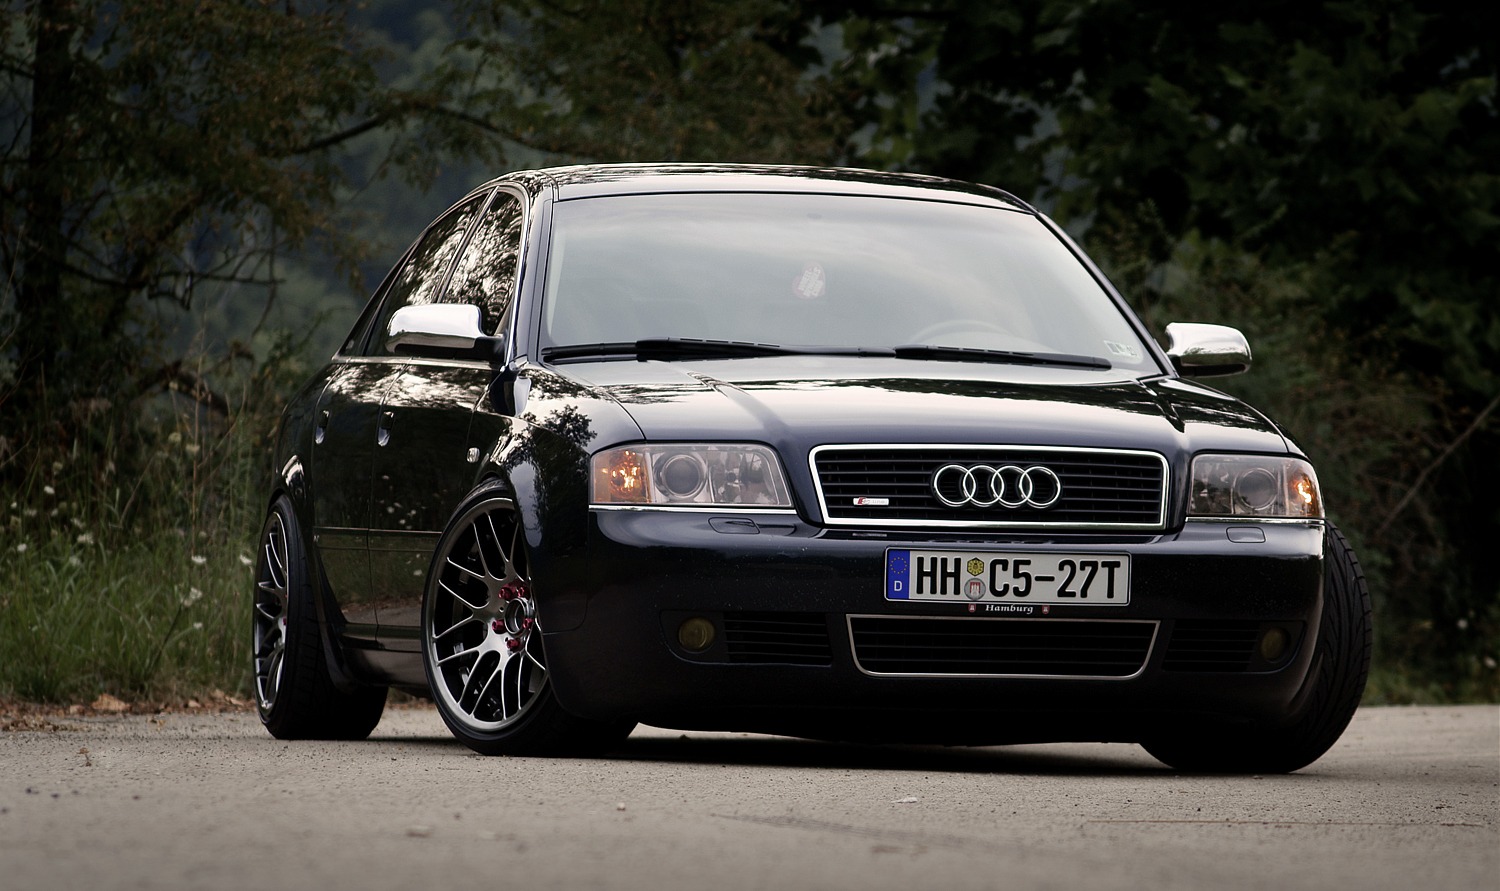 81 a 6 c. Audi a6 c5 2000. Audi a6 c5 2004. Audi a6 c5 97. Audi a6 c5 1997.